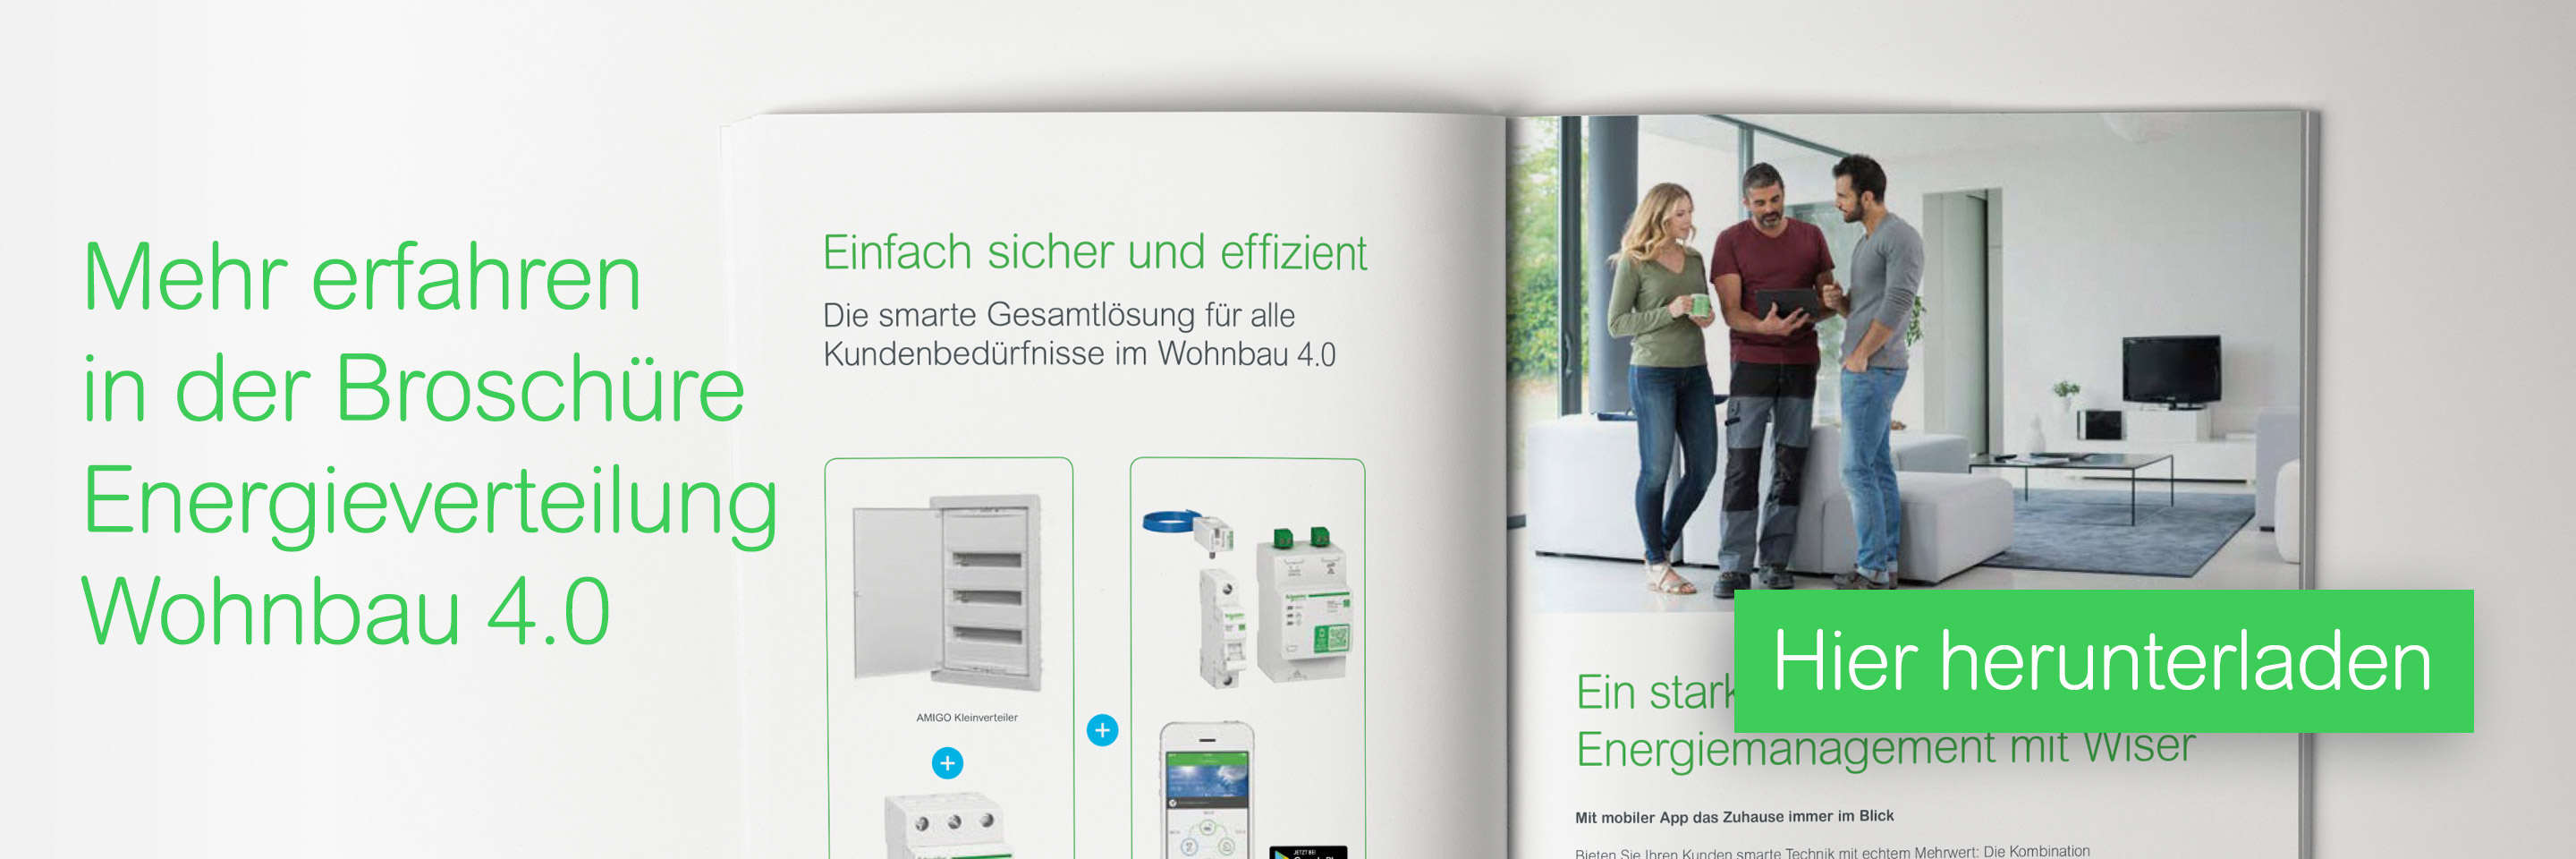 Download Broschüre Energieverteilung Wohnbau 4.0